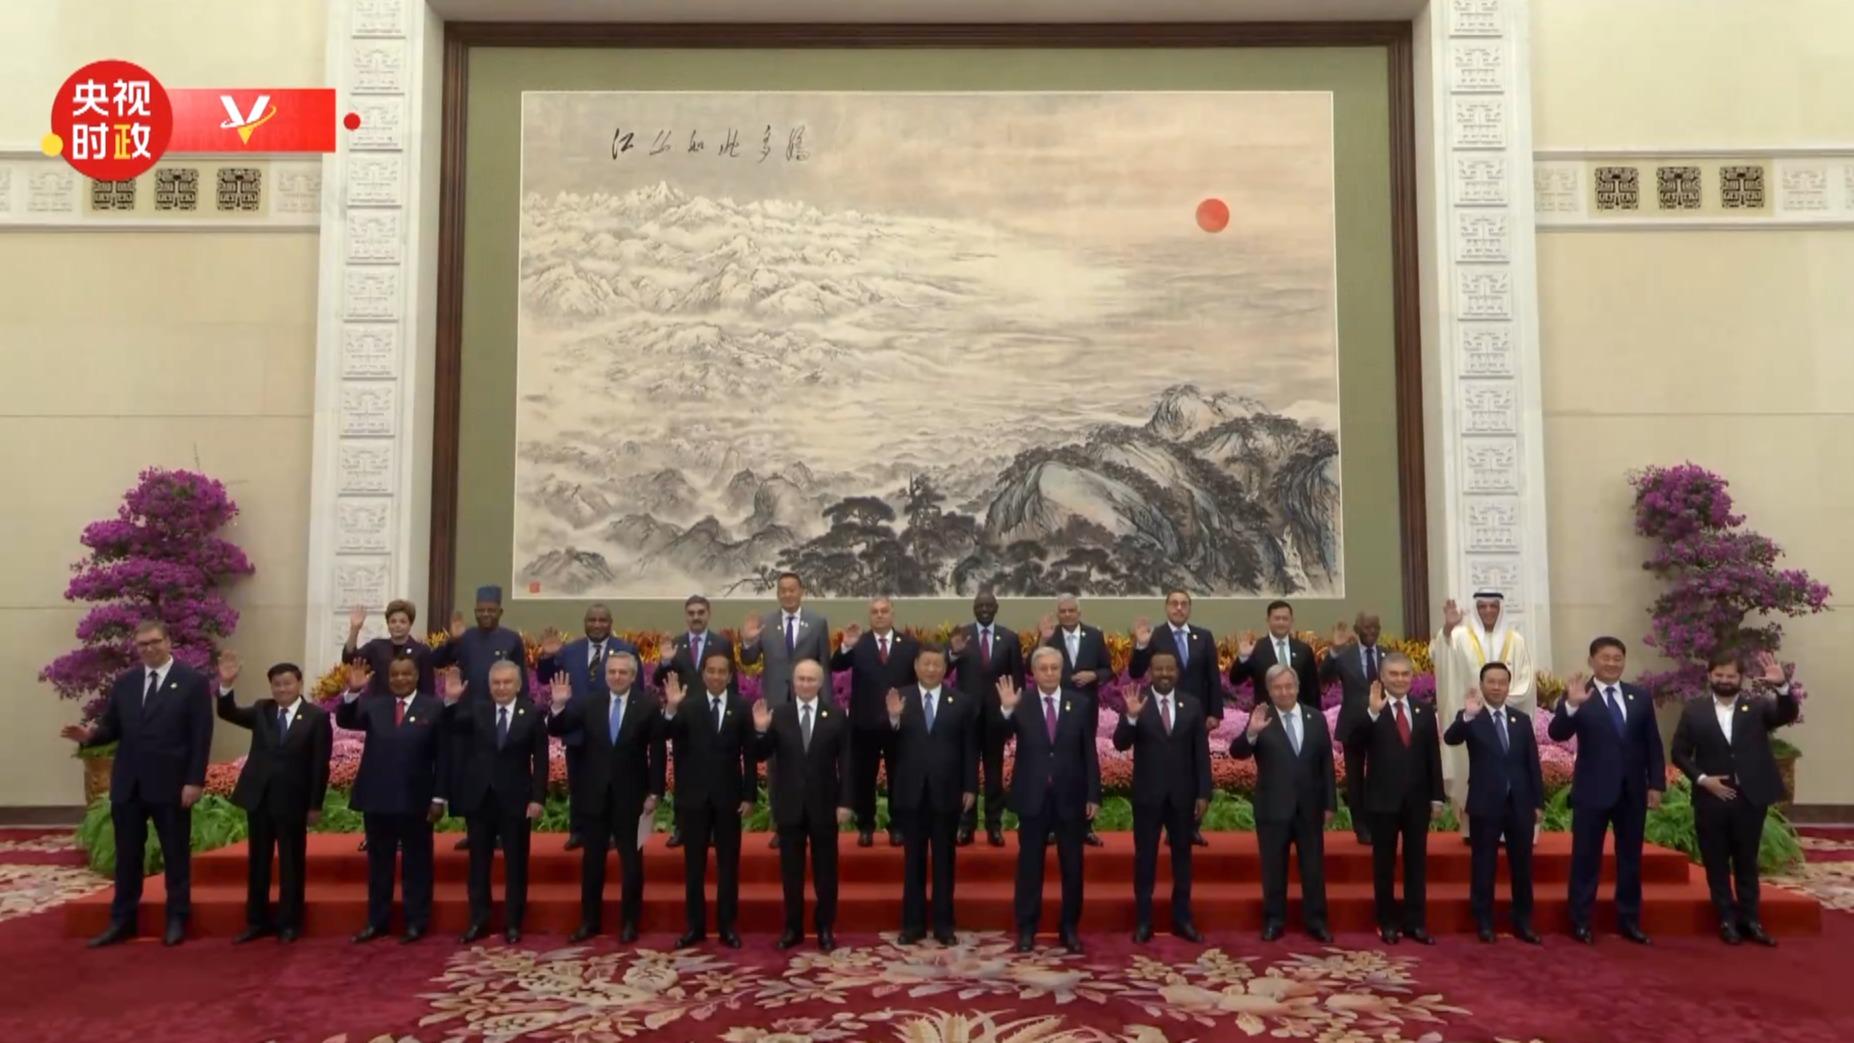 राष्ट्राध्यक्ष सी चिनफिङ र उद्घाटन समारोहमा सहभागी विदेशी नेताहरूसँगको सामूहिक तस्बिर